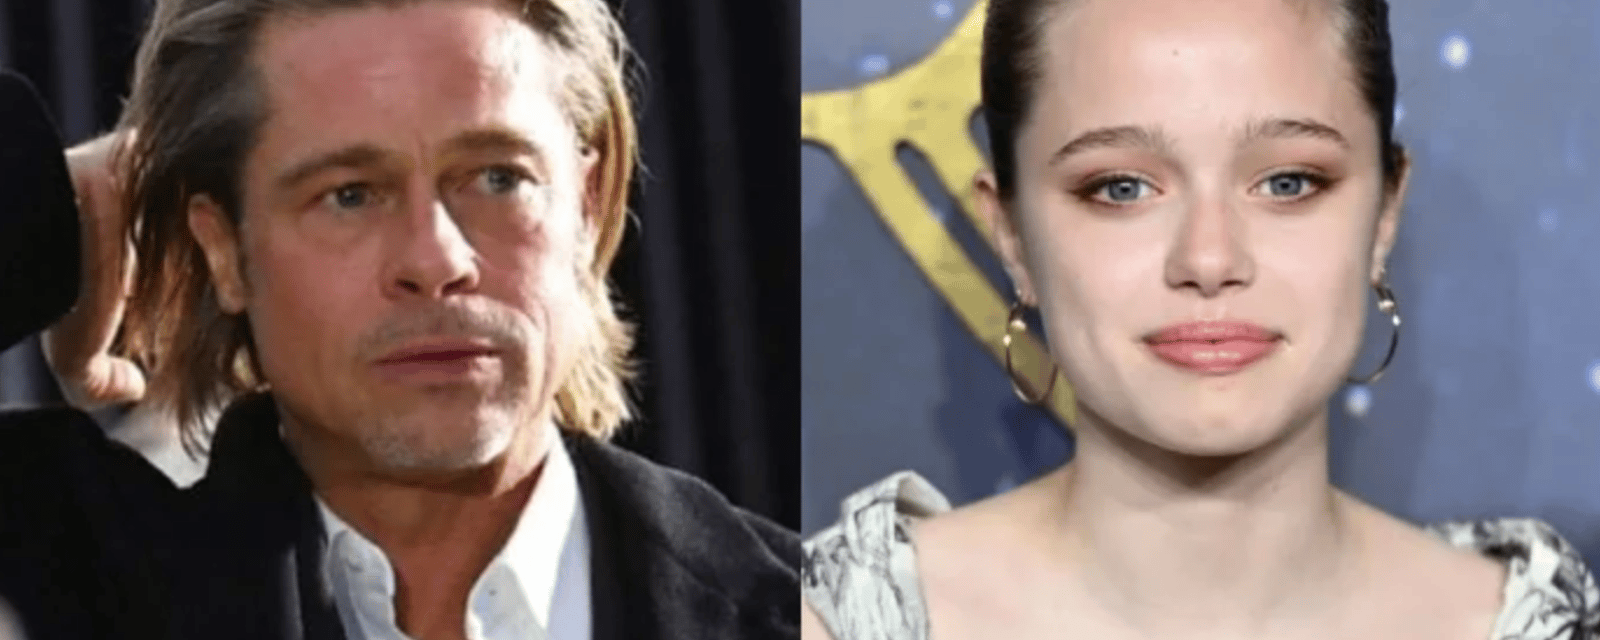 La fille de Brad Pitt fait retirer légalement son nom de famille de son nom le jour de ses 18 ans.